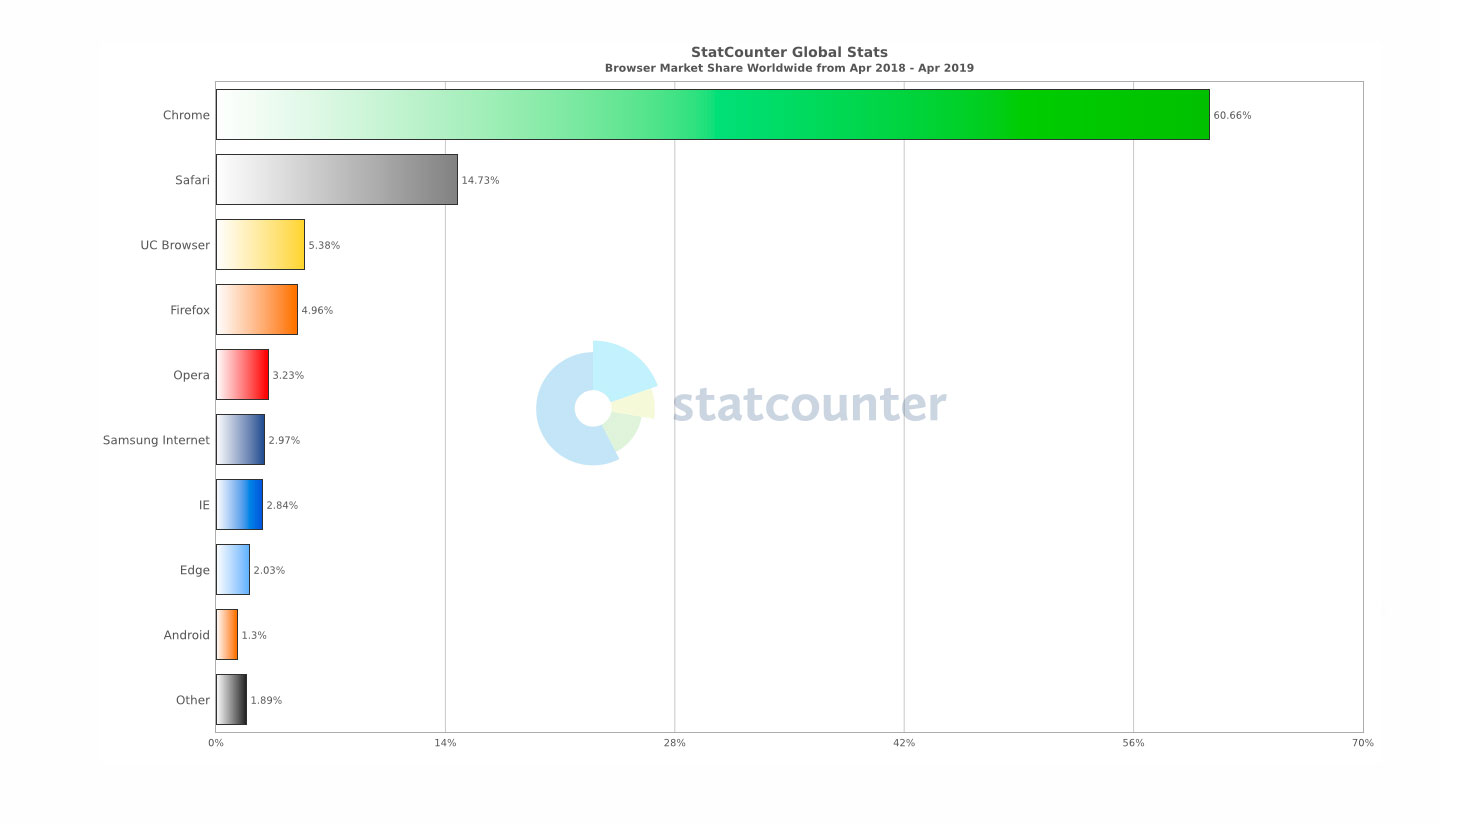 Edge tiene apenas un 2.84% del mercado de navegadores web.